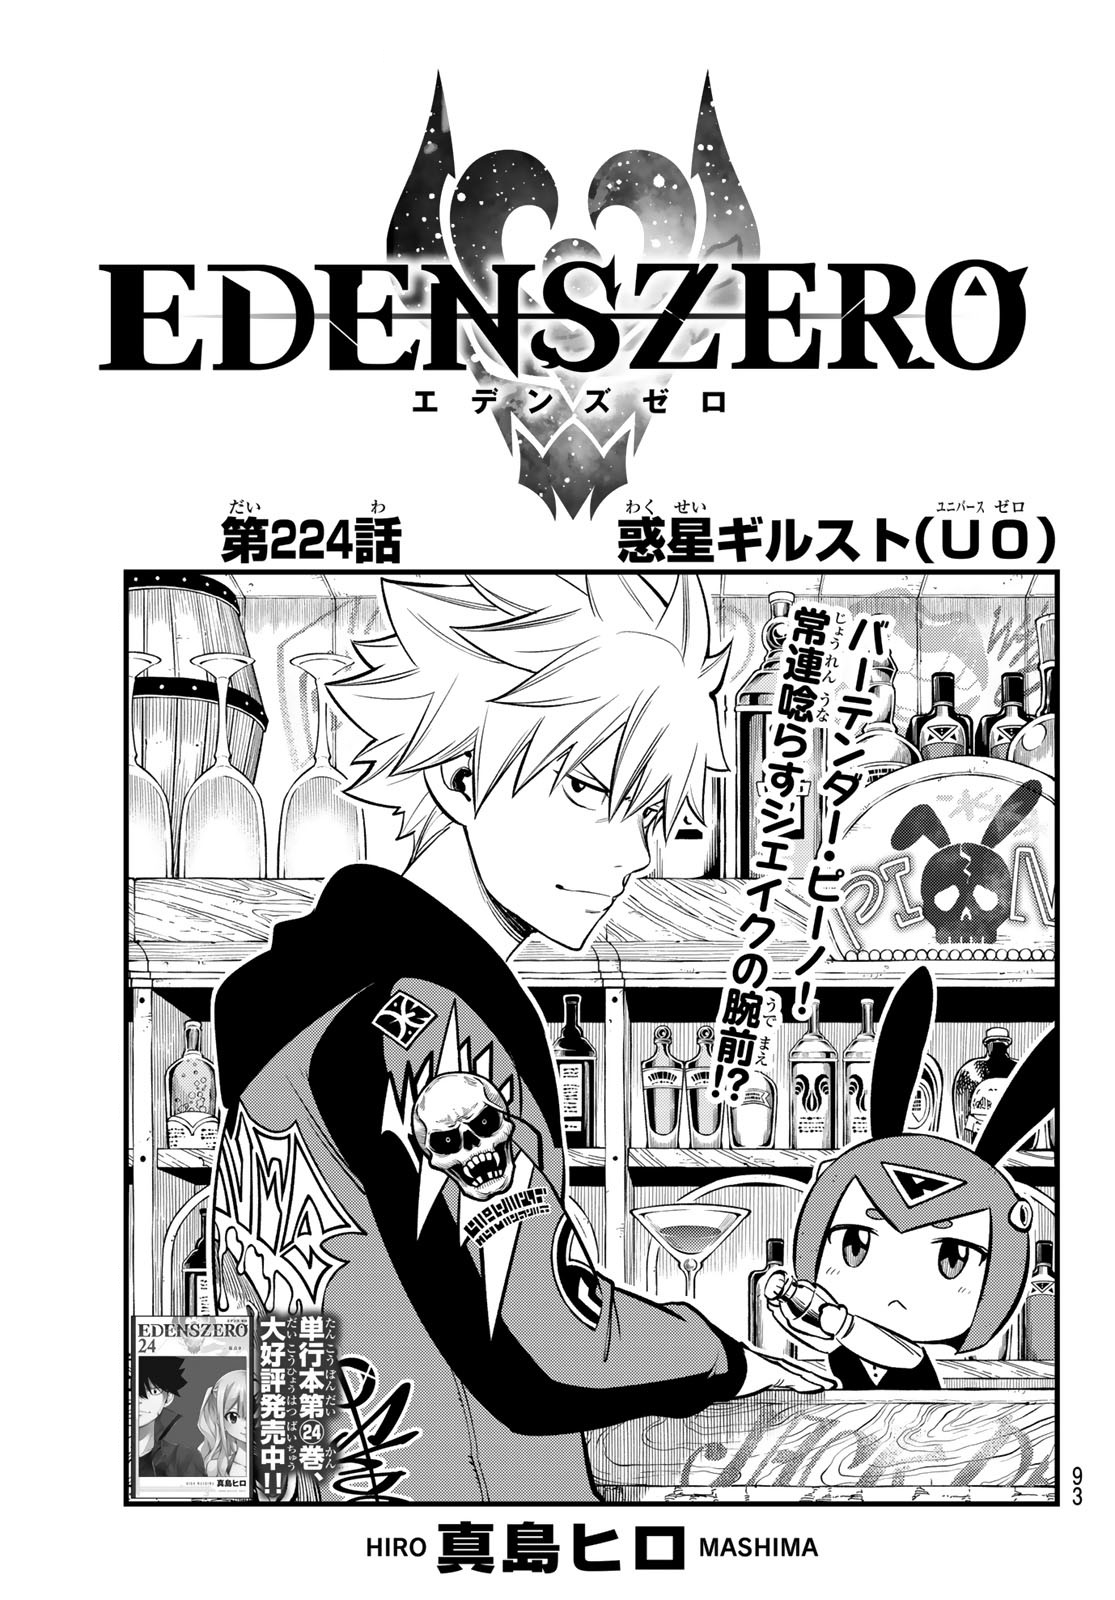 Chapter 249, Edens Zero Wiki